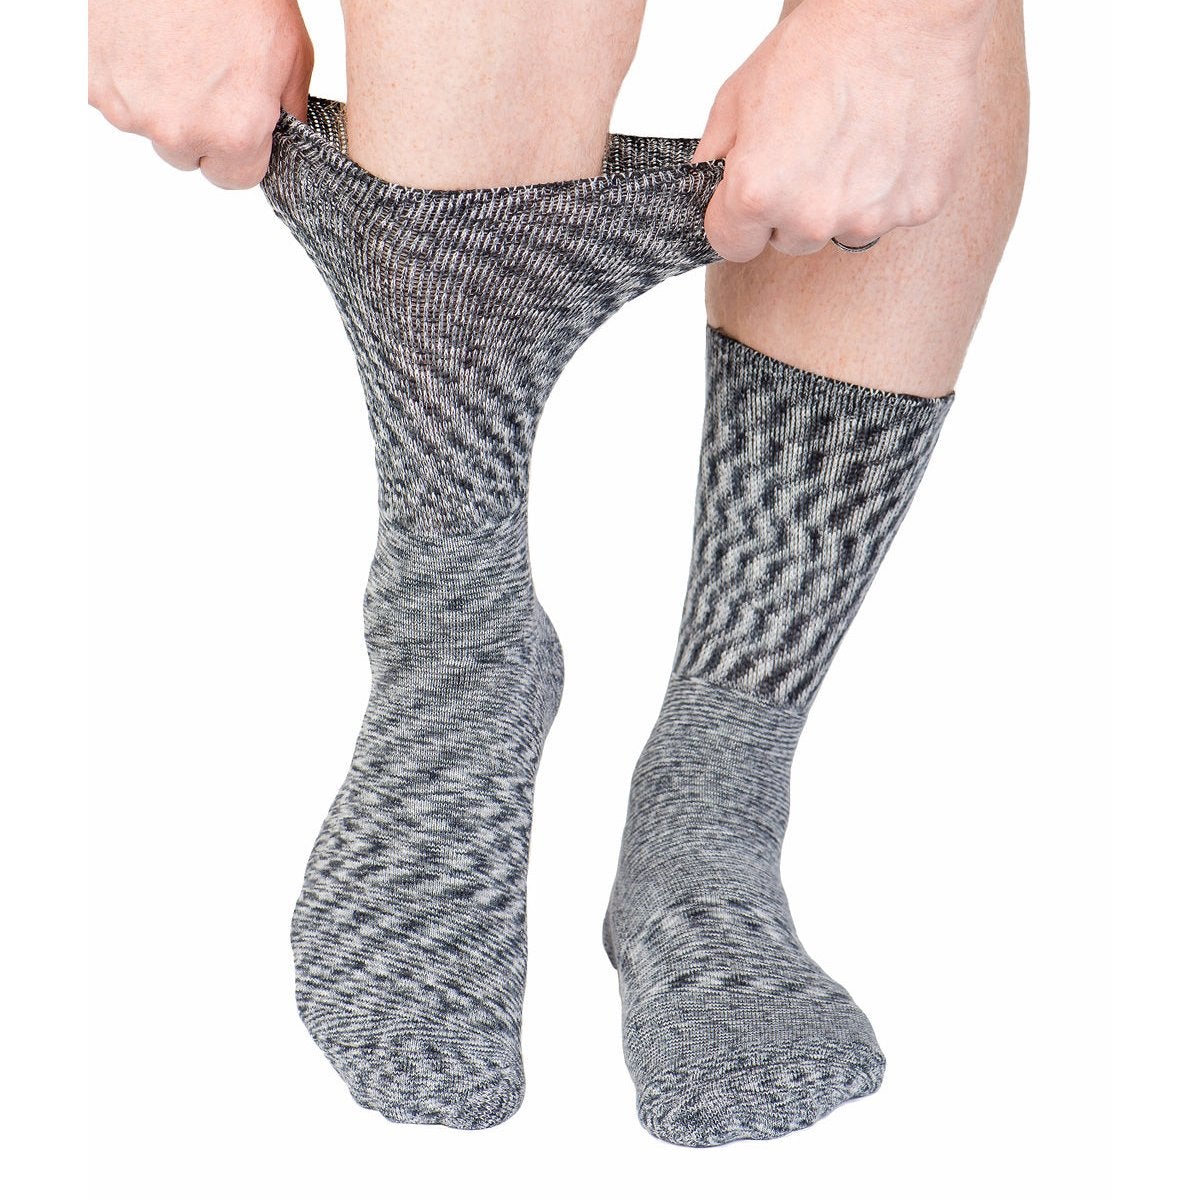 Diabetic Socks - Marble Grey - Diabetic Socks Shops